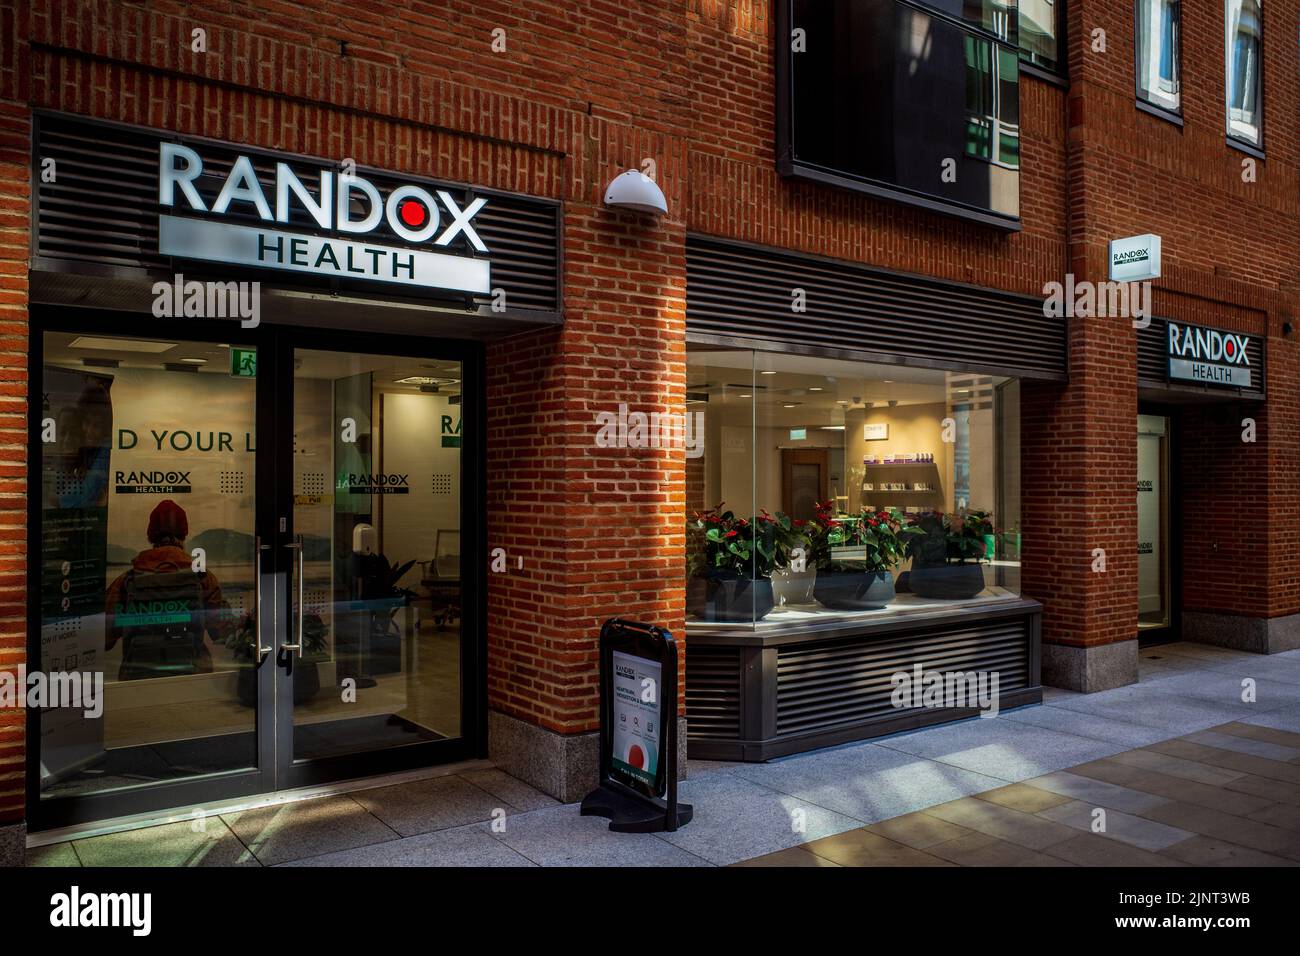 Randox Health Clinic in Paternoster Square, nel quartiere finanziario della città di Londra. Caduta di salute di Randox in clinica e centro di prova. Foto Stock